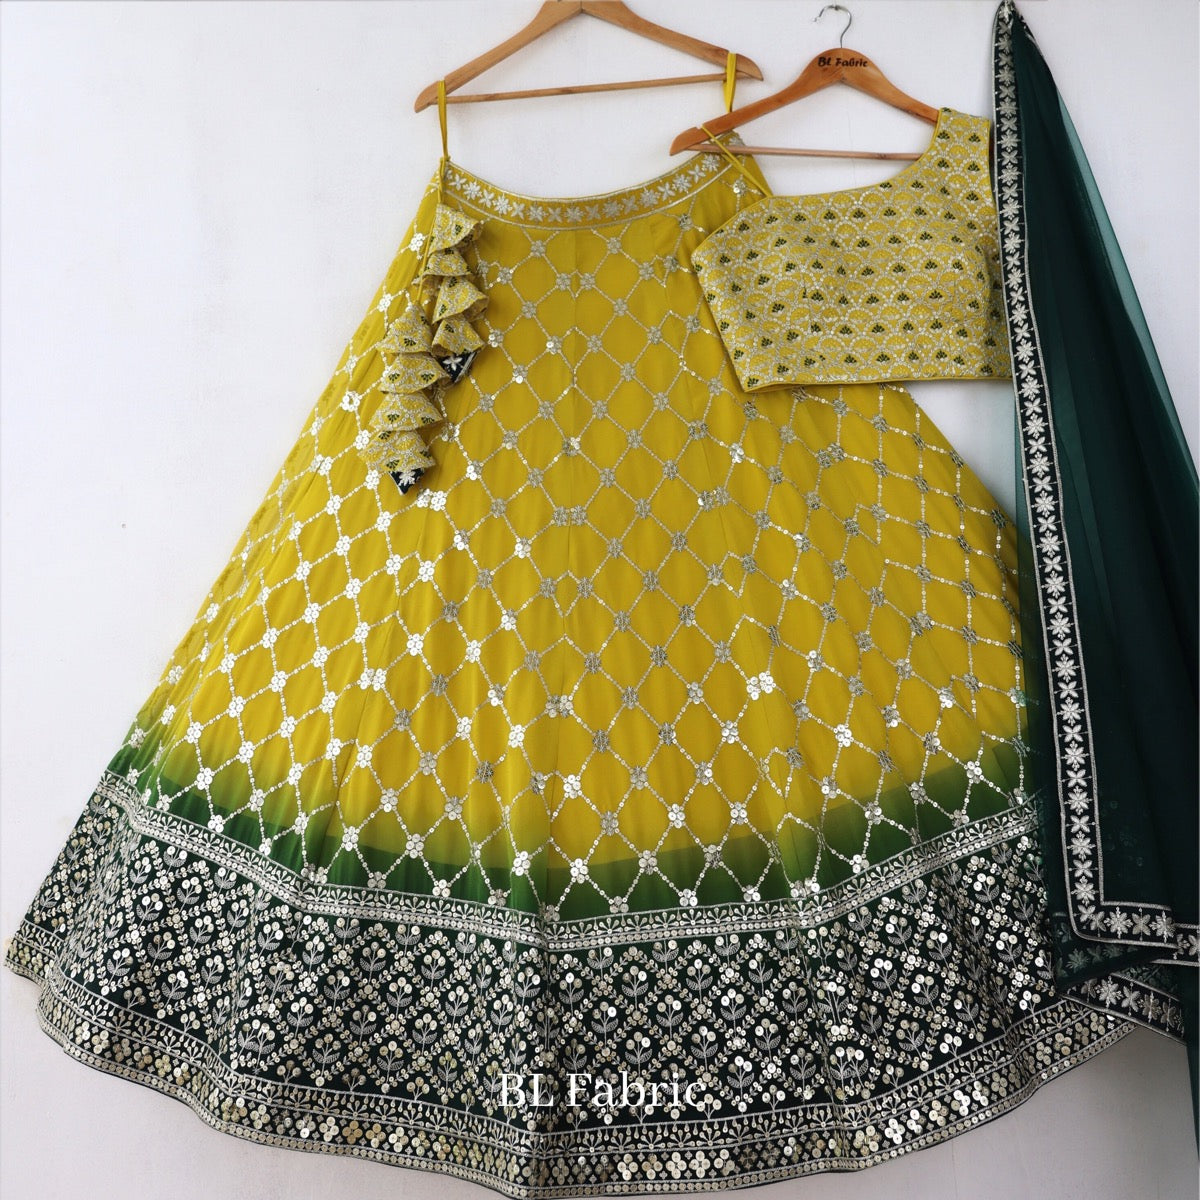 Green lehenga ideas for mehendi function | mehndi dresses for girls -  YouTube